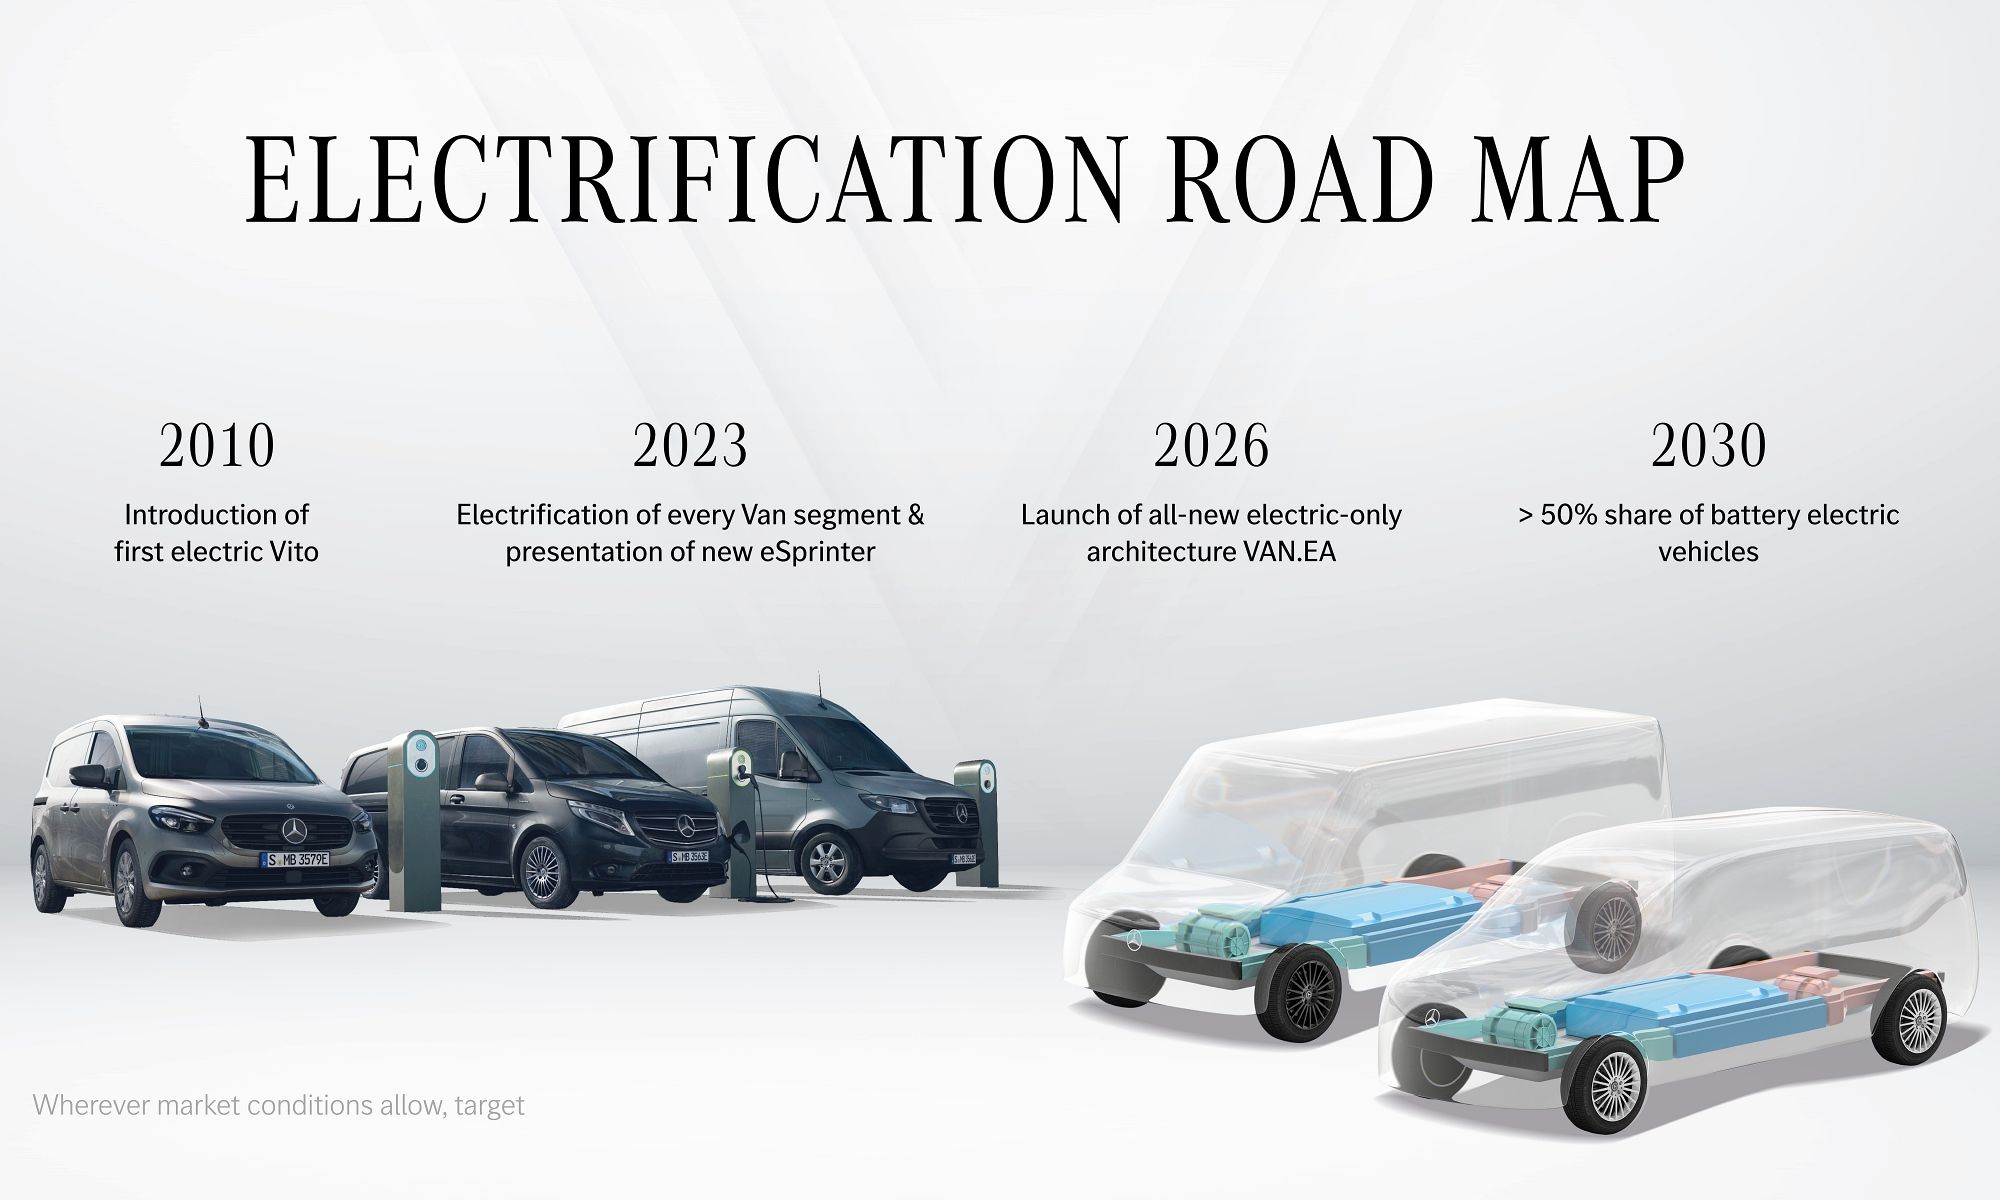 A partir de 2026, todas las nuevas furgonetas de Mercedes se desarrollaran sobre la plataforma VAN.EA